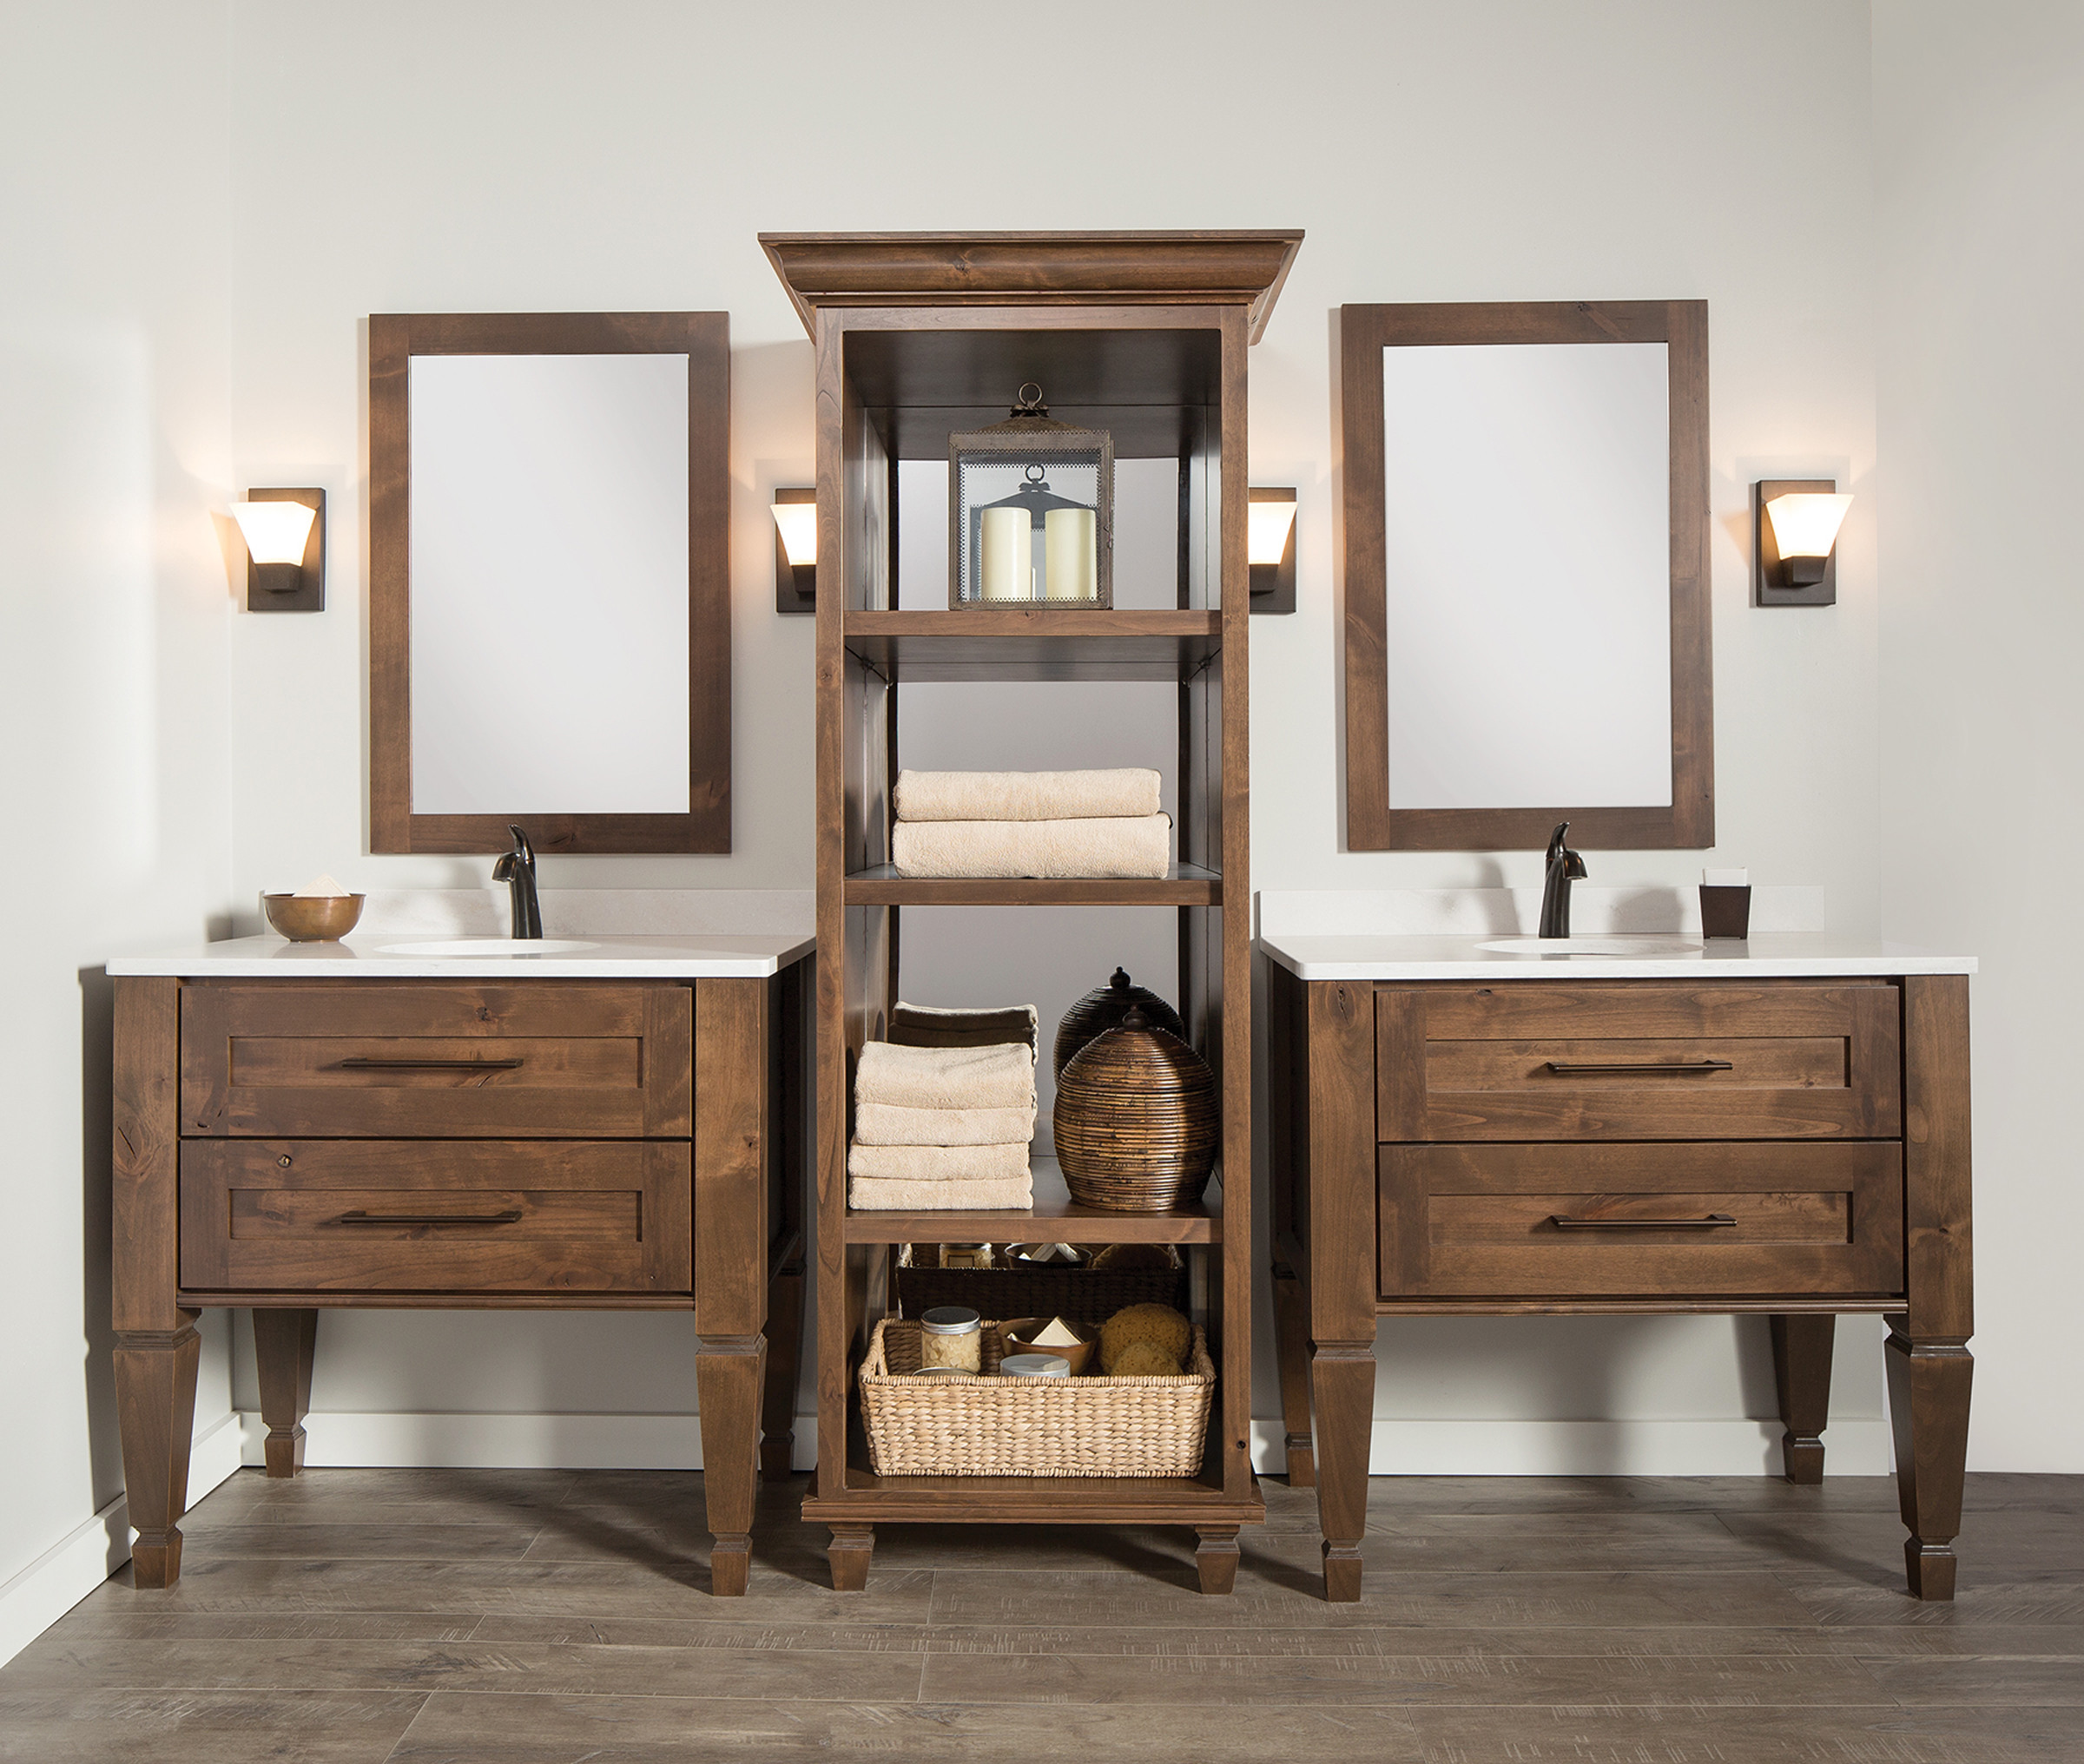 Furniture Style Bathroom Vanities Ideas, Furniture Style Bathroom Cabinets